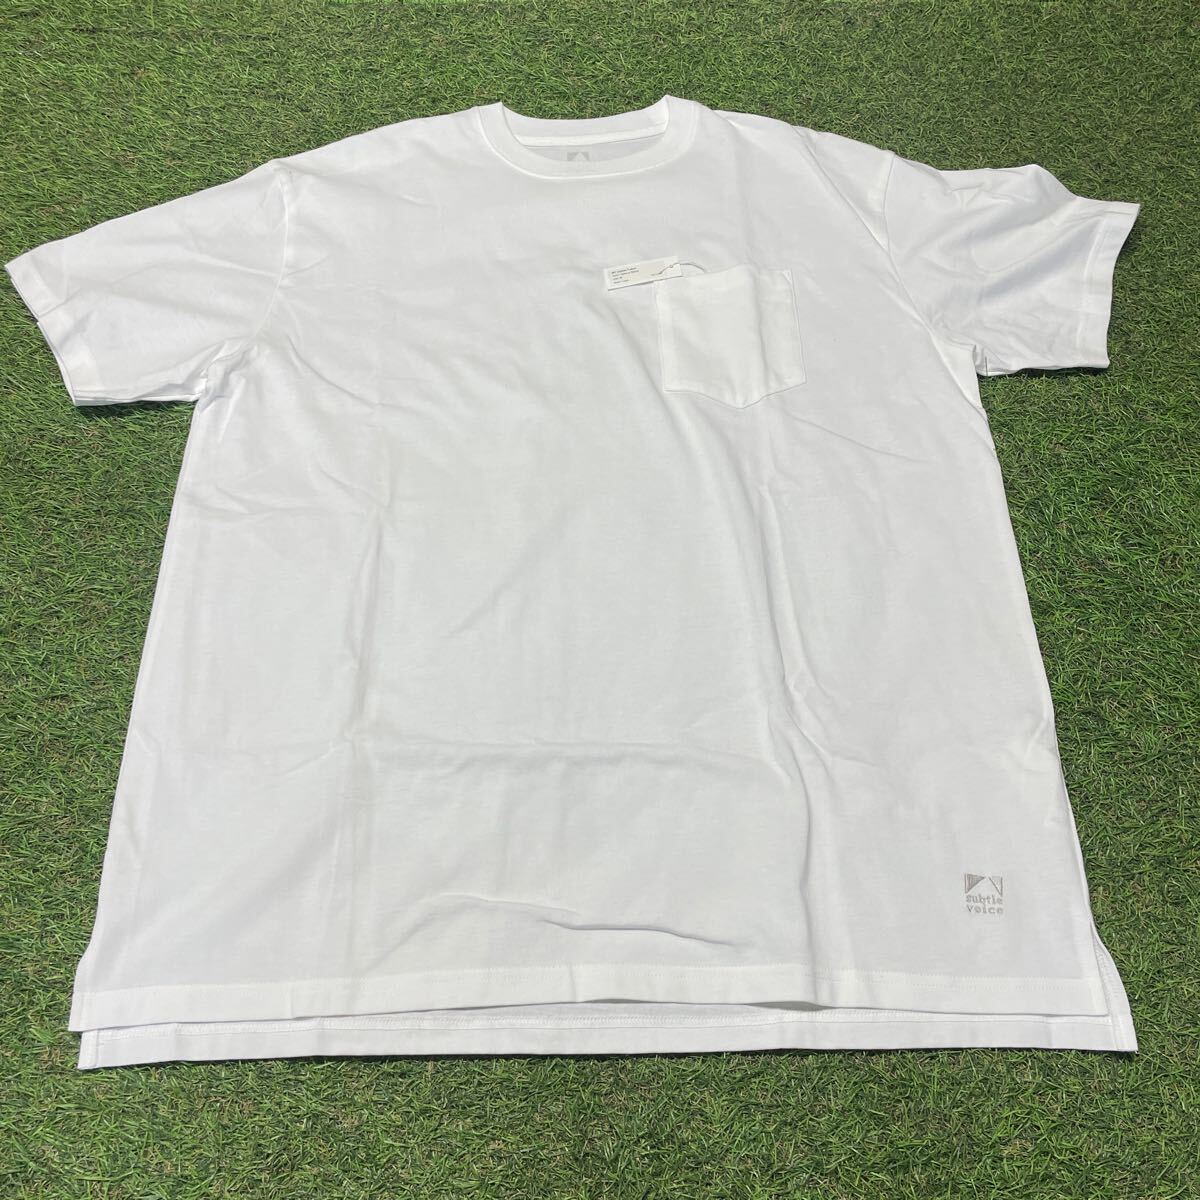 NA173-A51 subtle voice サトルボイス MT Cotton T-shirt Natural White ユニセックス Mサイズ アウトドア 未使用 展示 Tシャツ_画像1